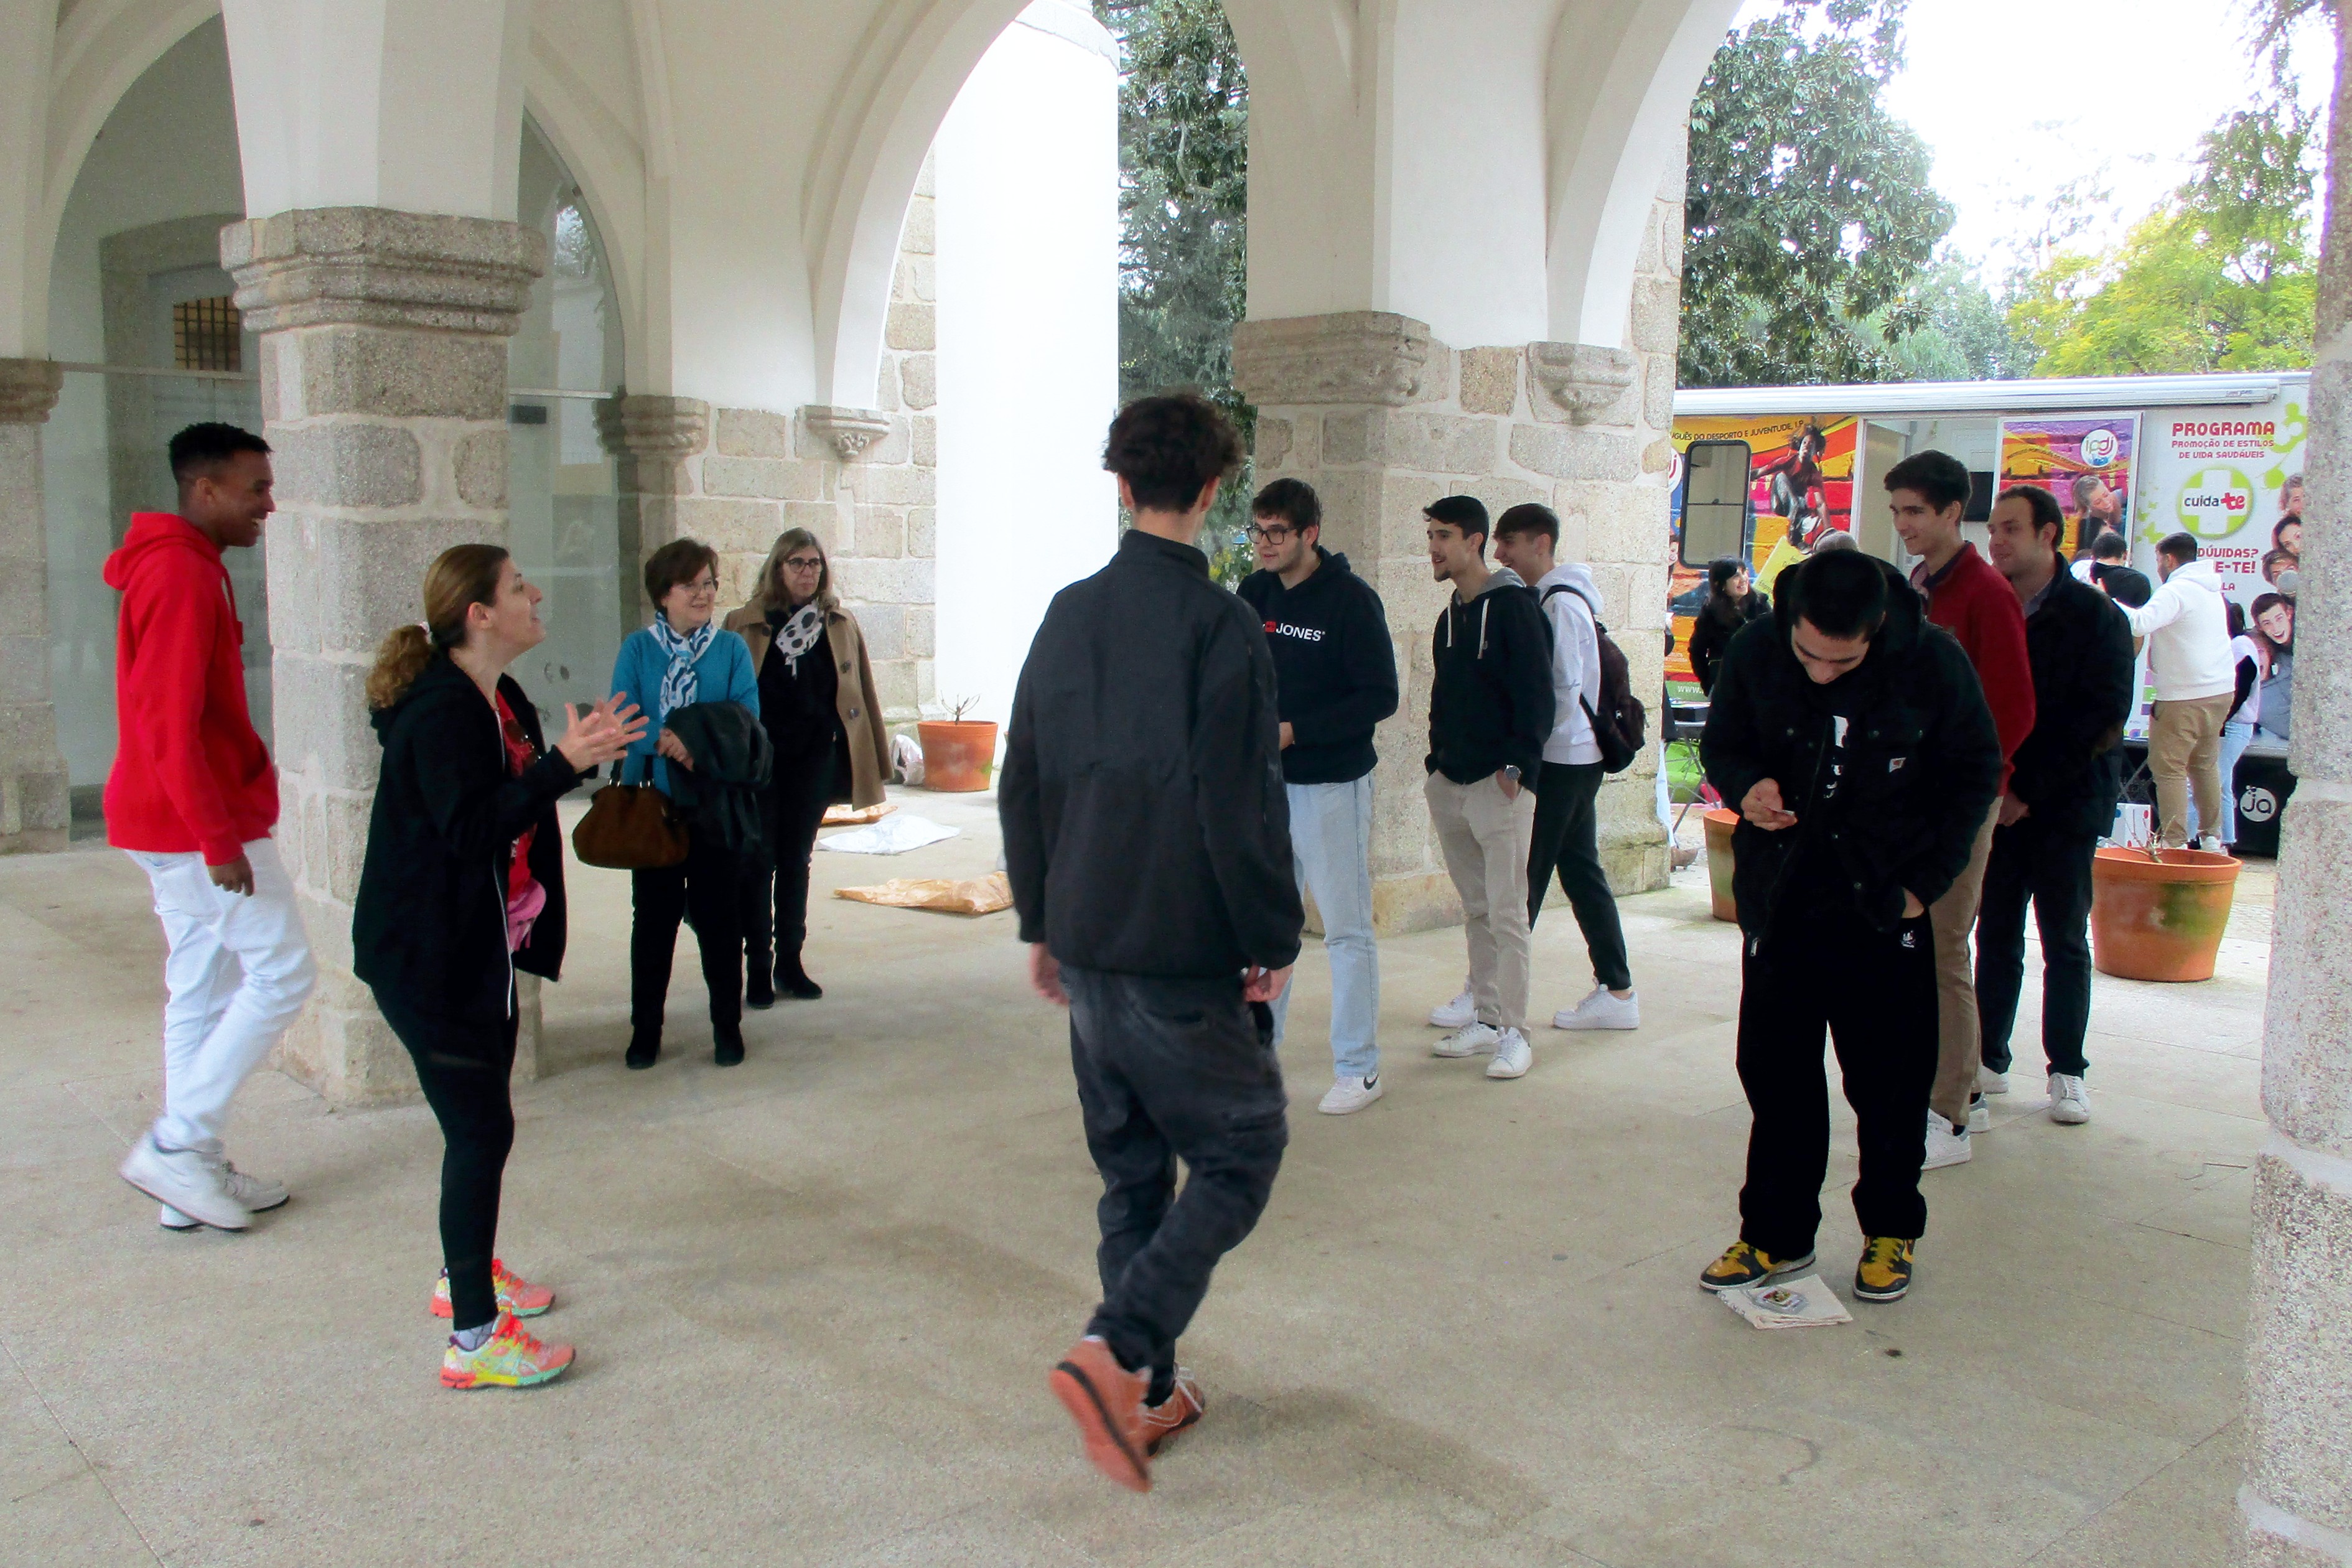 Grupo de jovens da EPRAL a participar na atividade sobre alimentação e atividade física que decorreu no Jardim Público de Évora, junto ao Palácio de D. Manuel.